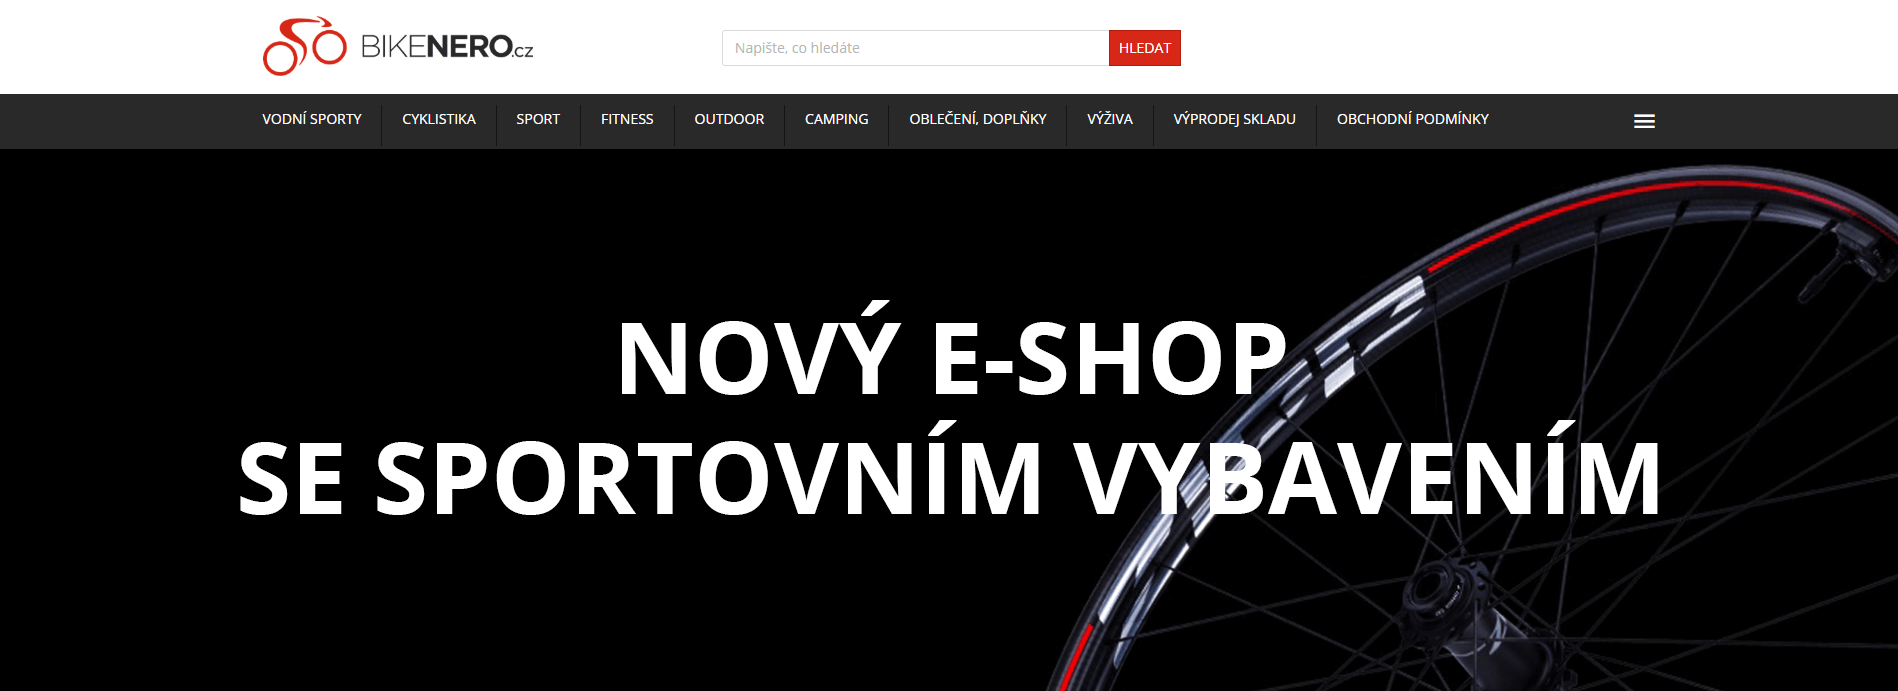 new e-shop